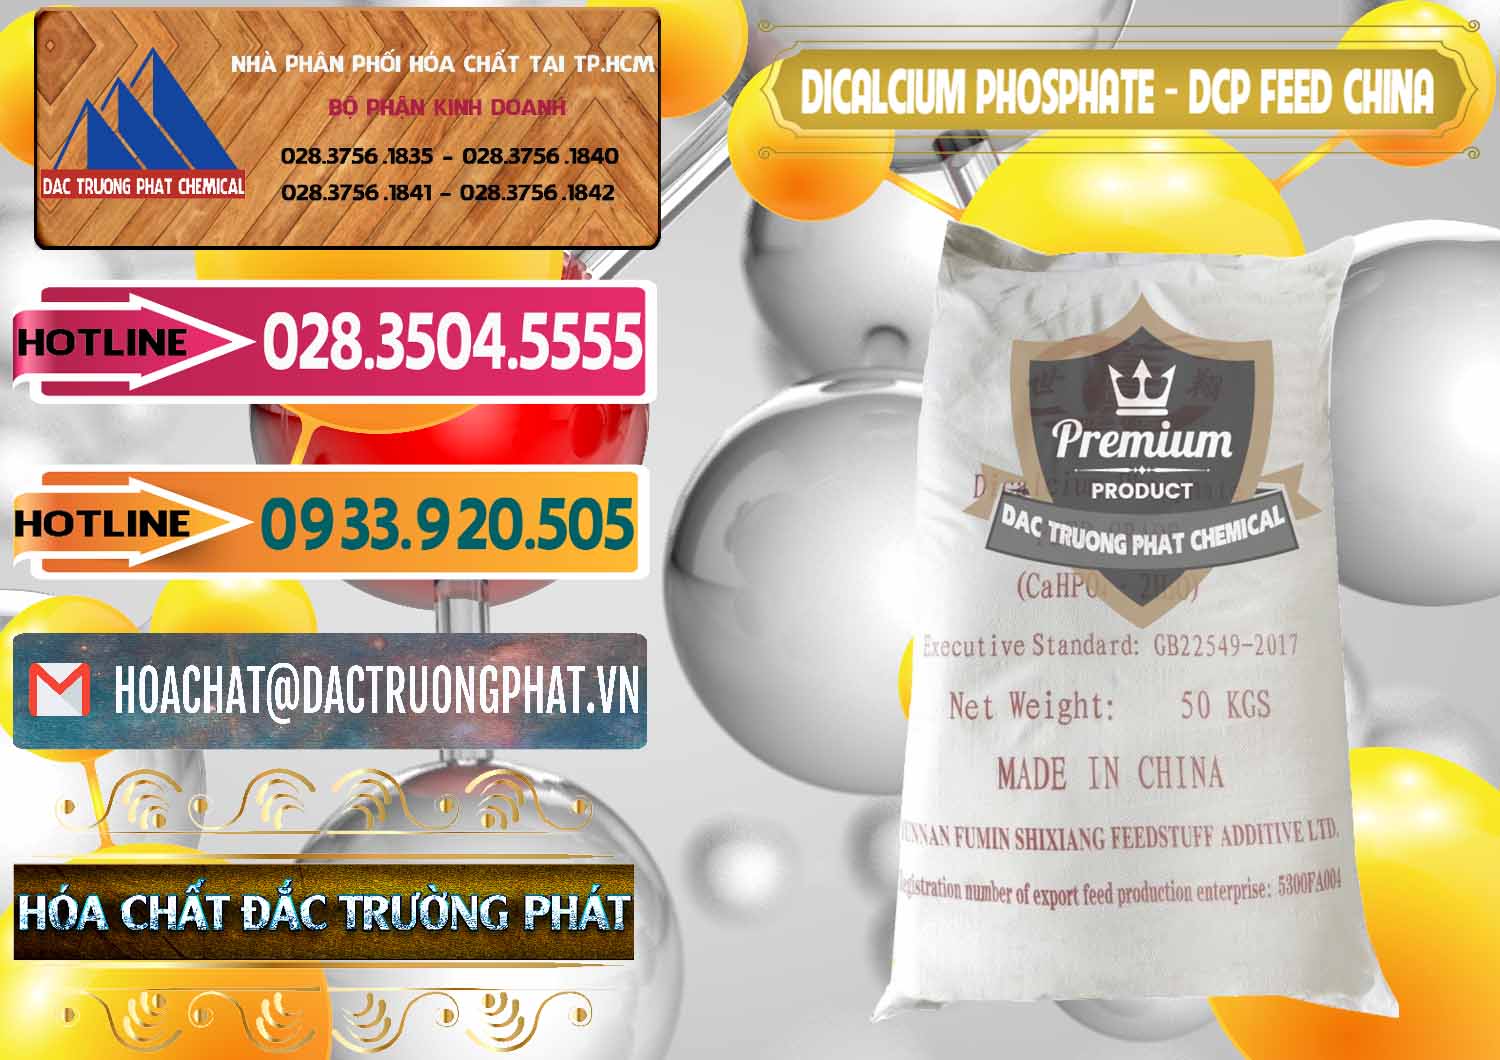 Nơi nhập khẩu - bán Dicalcium Phosphate - DCP Feed Grade Trung Quốc China - 0296 - Cung cấp & phân phối hóa chất tại TP.HCM - dactruongphat.vn